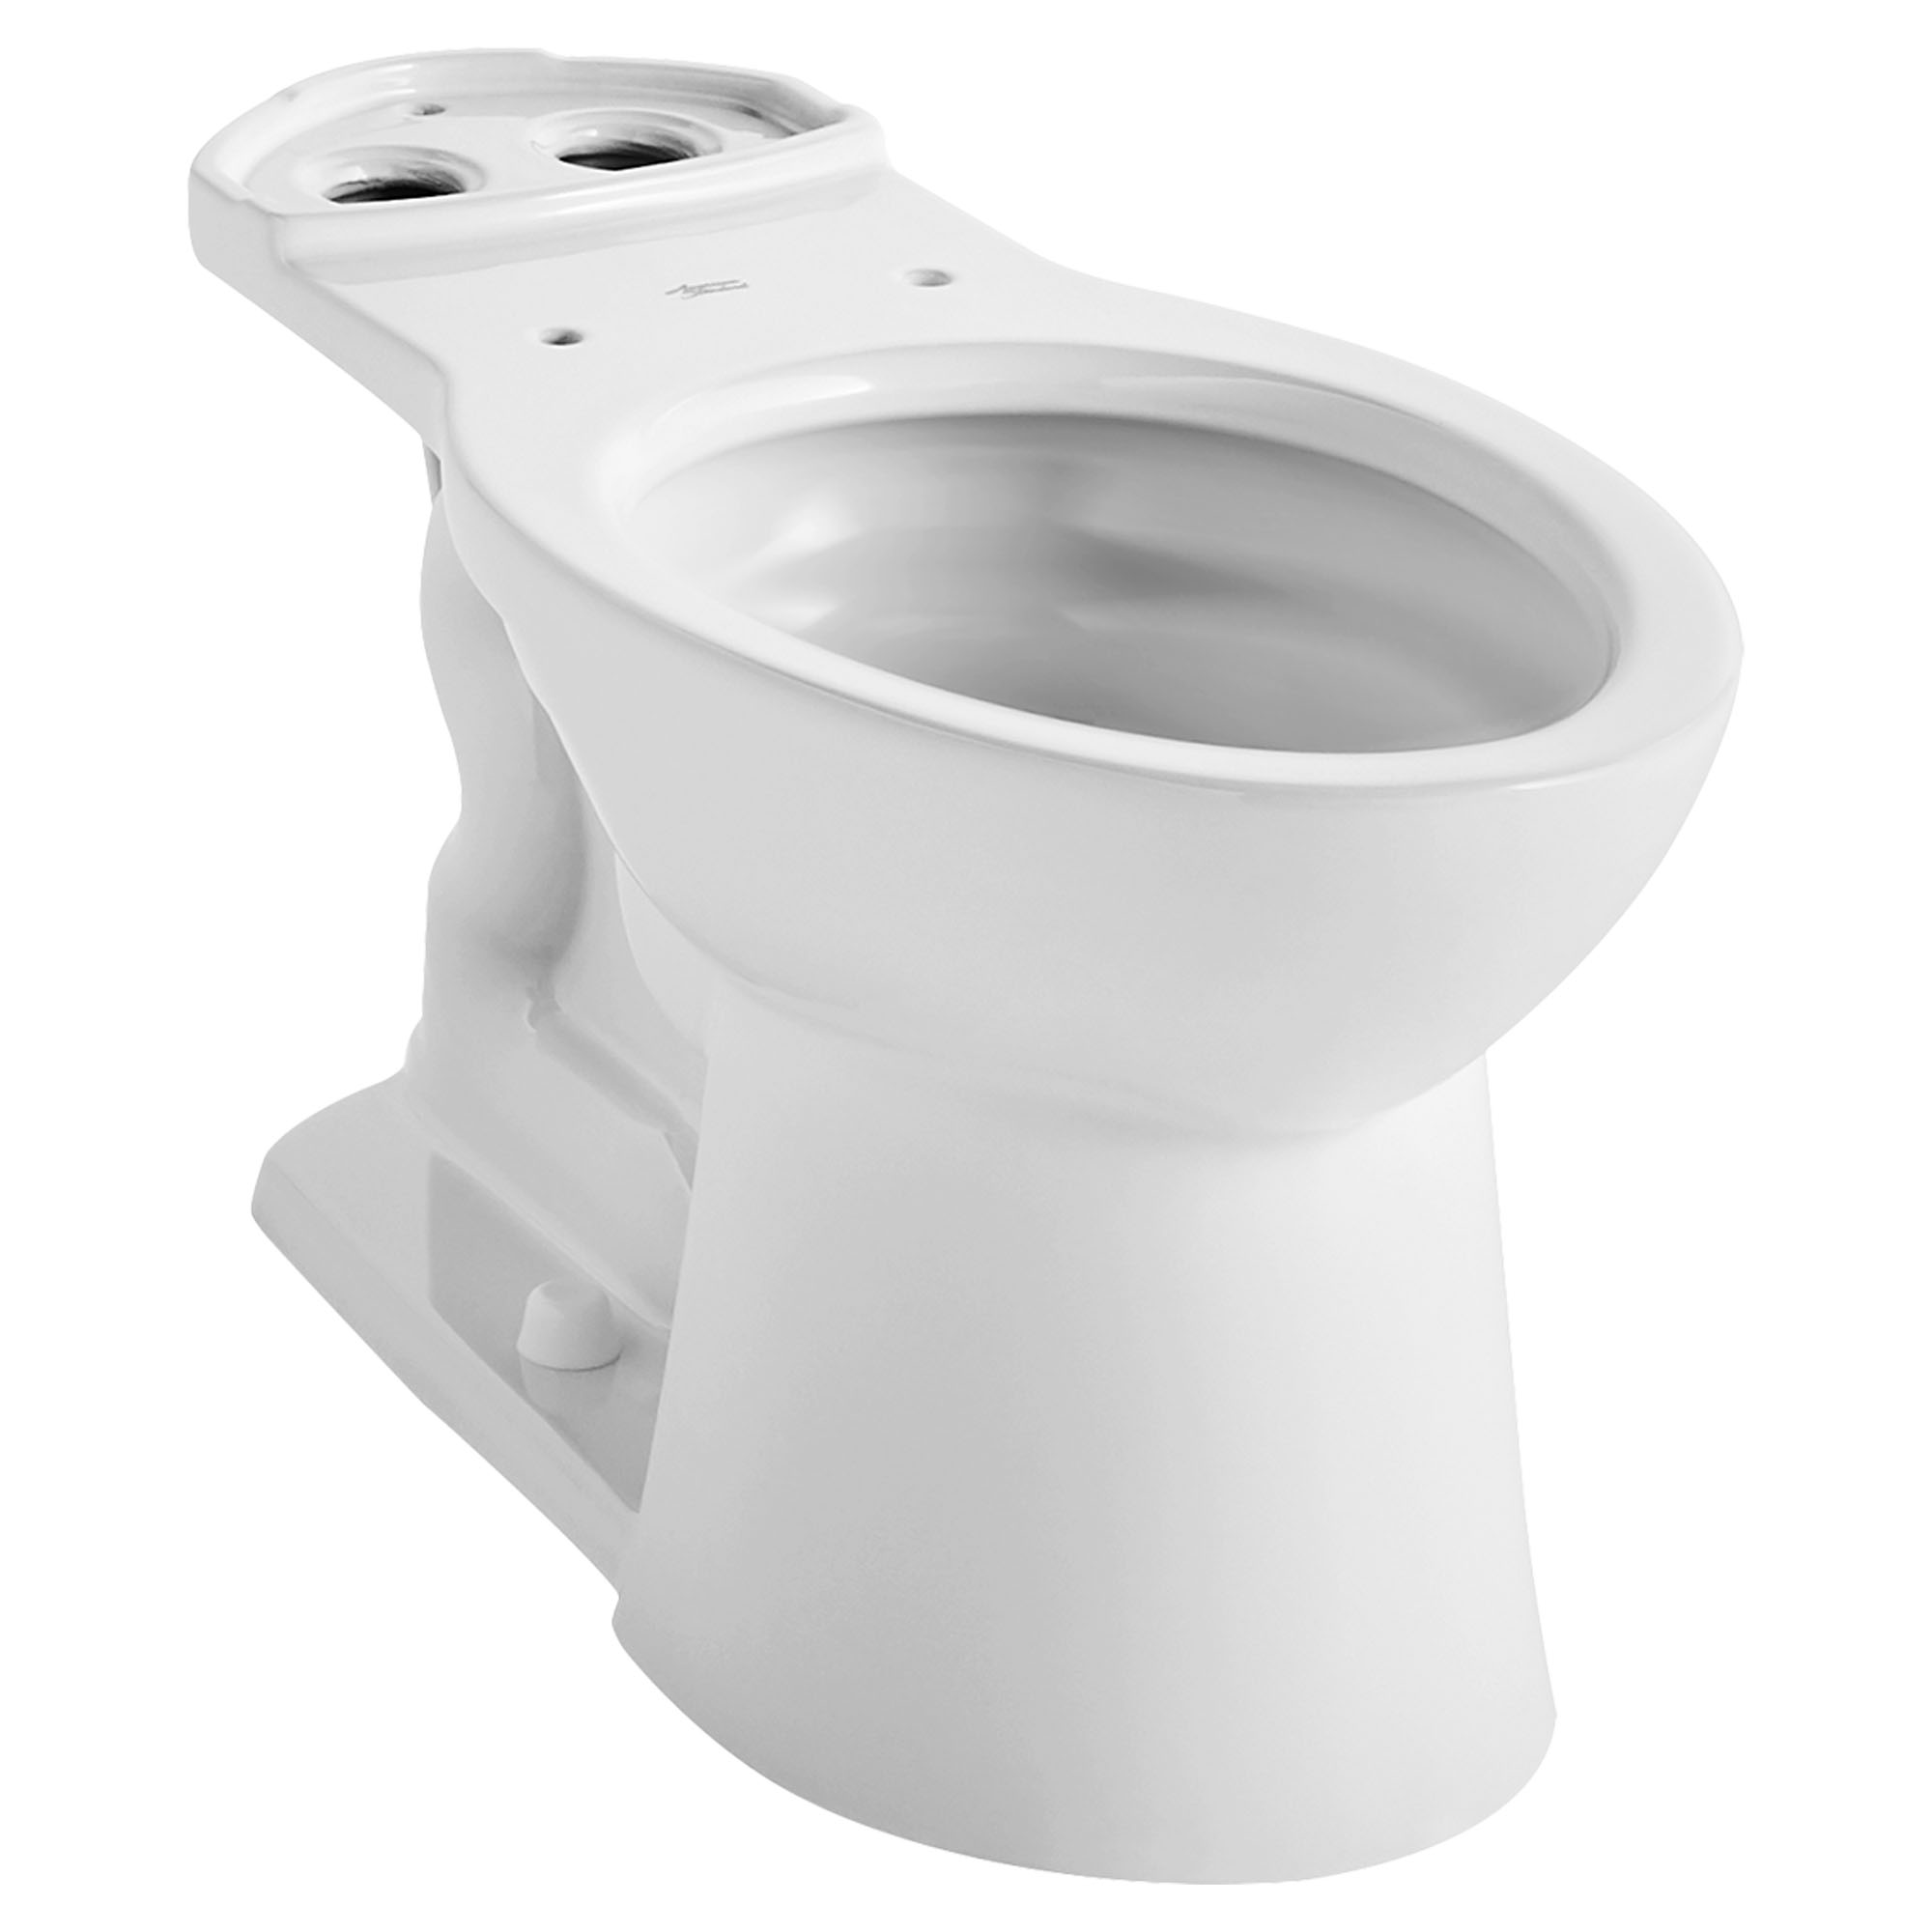 Toilette VorMax, à cuvette allongée à hauteur de chaise, sans siège